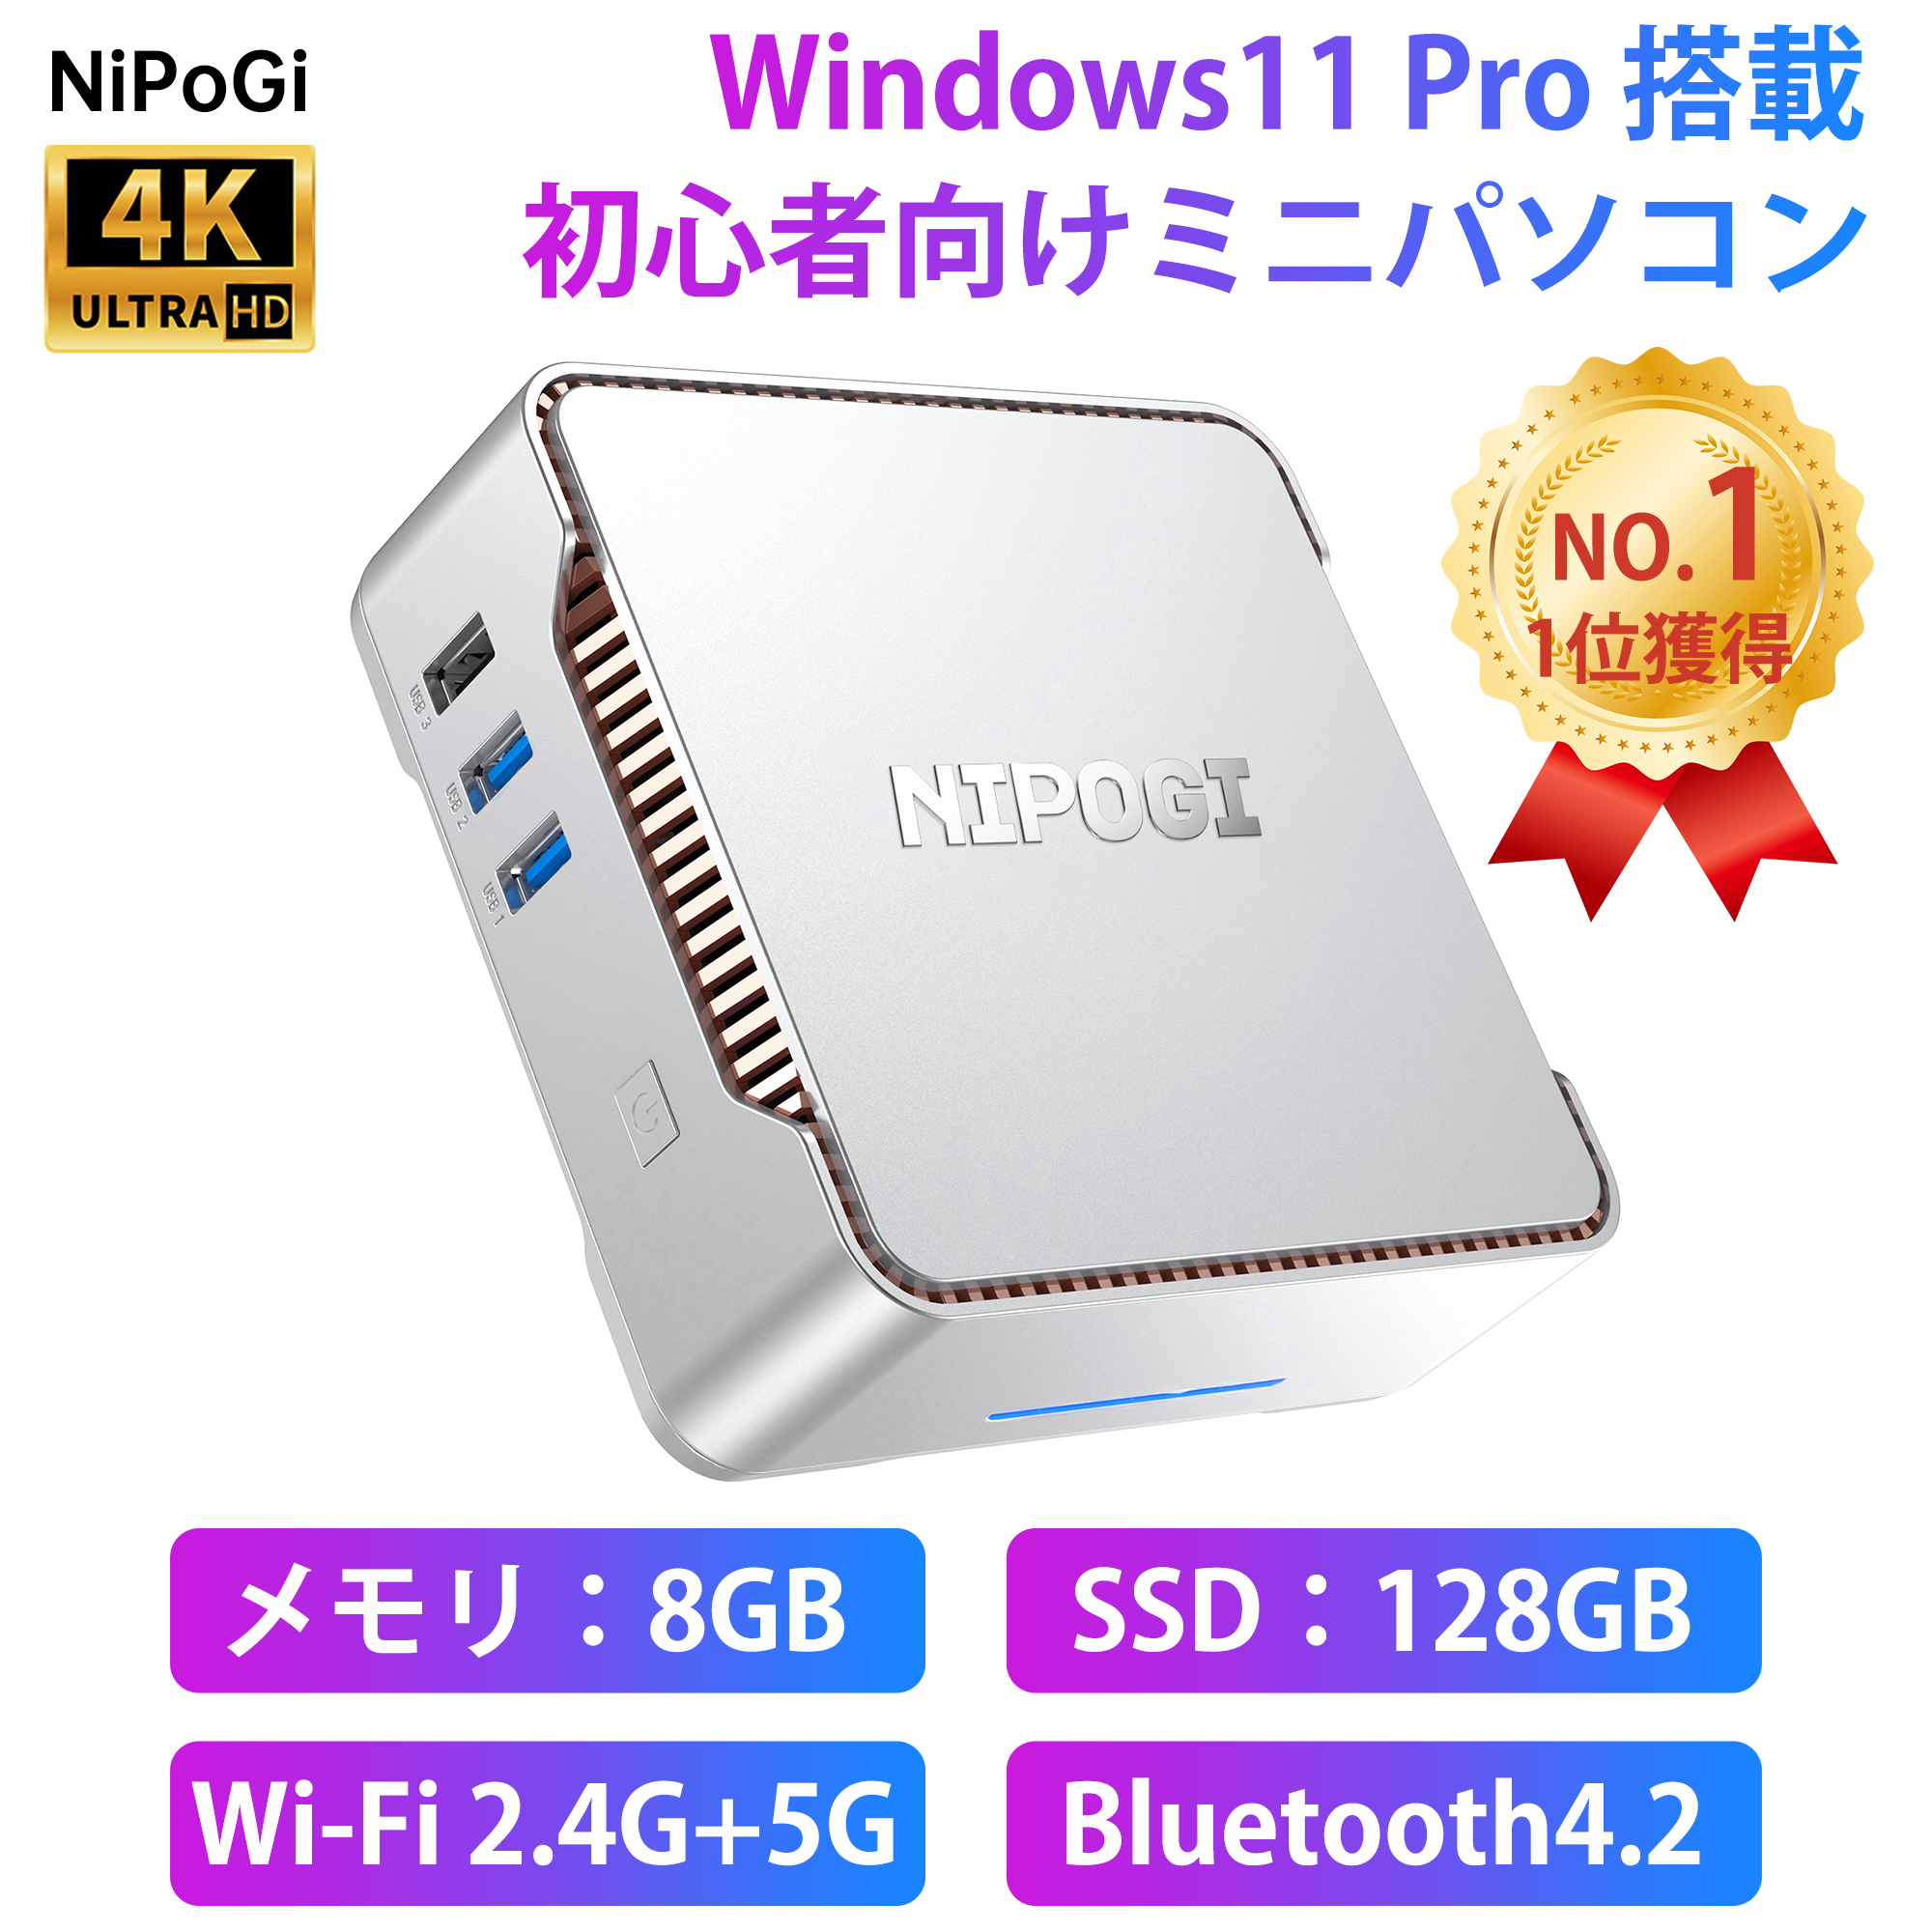 ミニpc ミニパソコン Windows11 Pro インテル11世代 n5105 mini pc 8GB DDR4 128GB SSD ミニデスクトップパソコン 2.9GHz 4K 3画面同時出力 小型? ROM 2TBまで拡張可能 有線LANポート 高速WiFi  HDMI 初心者向け 小型パソコン